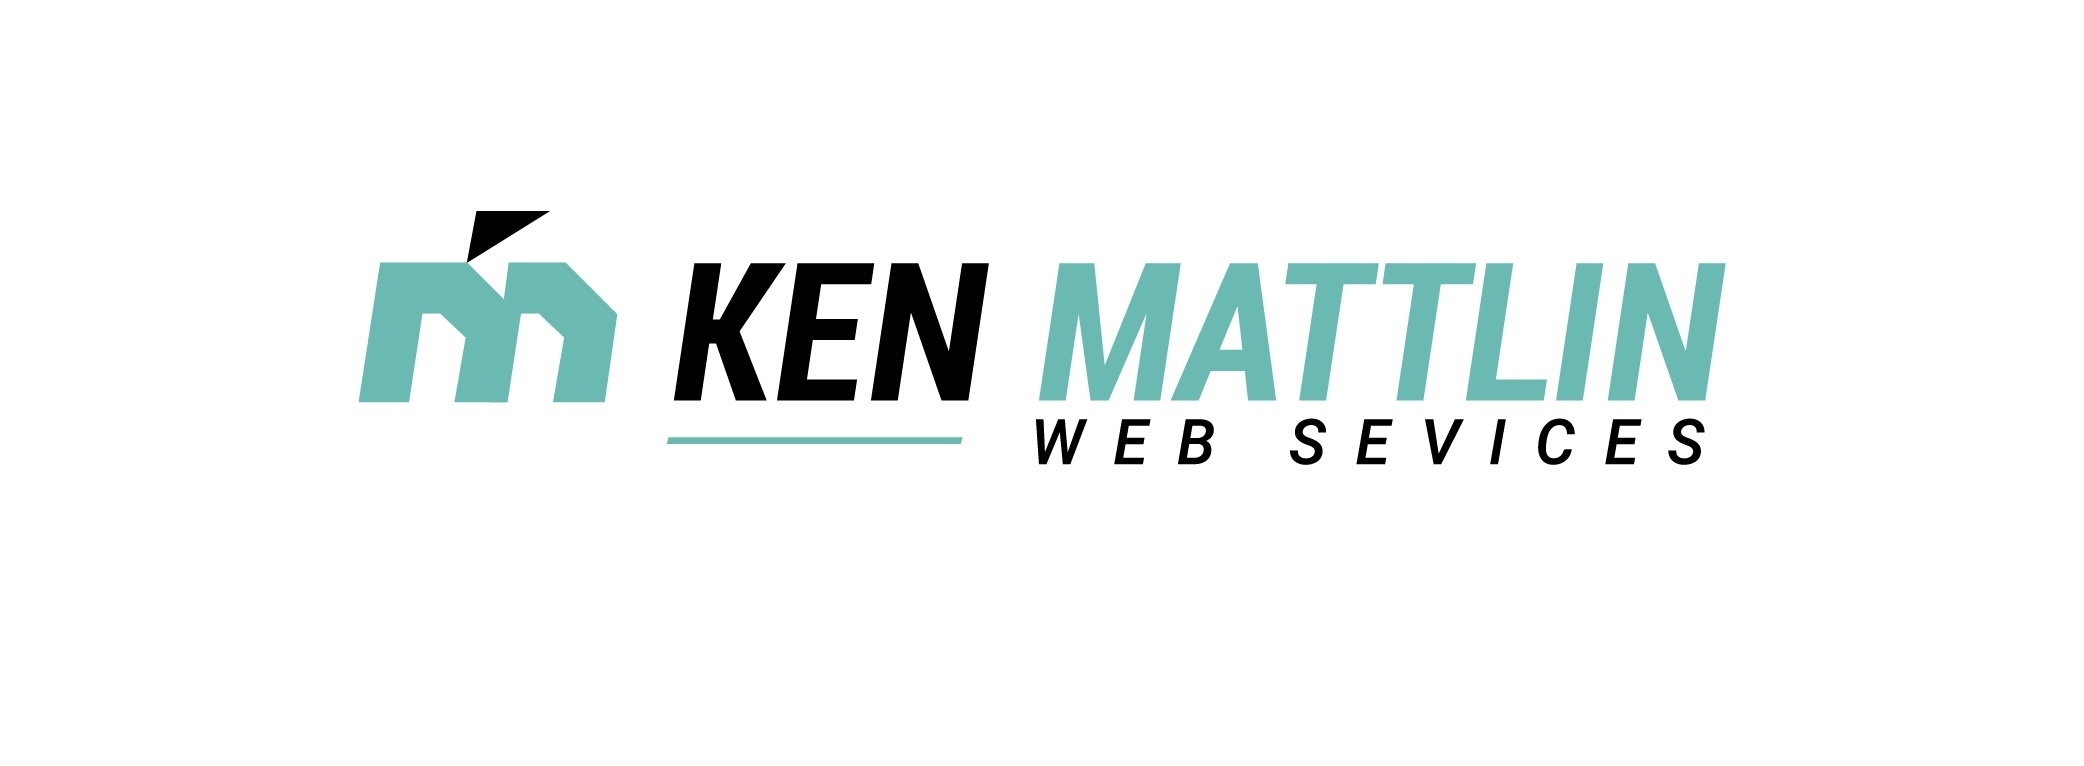 Ken Mattlin Web Services